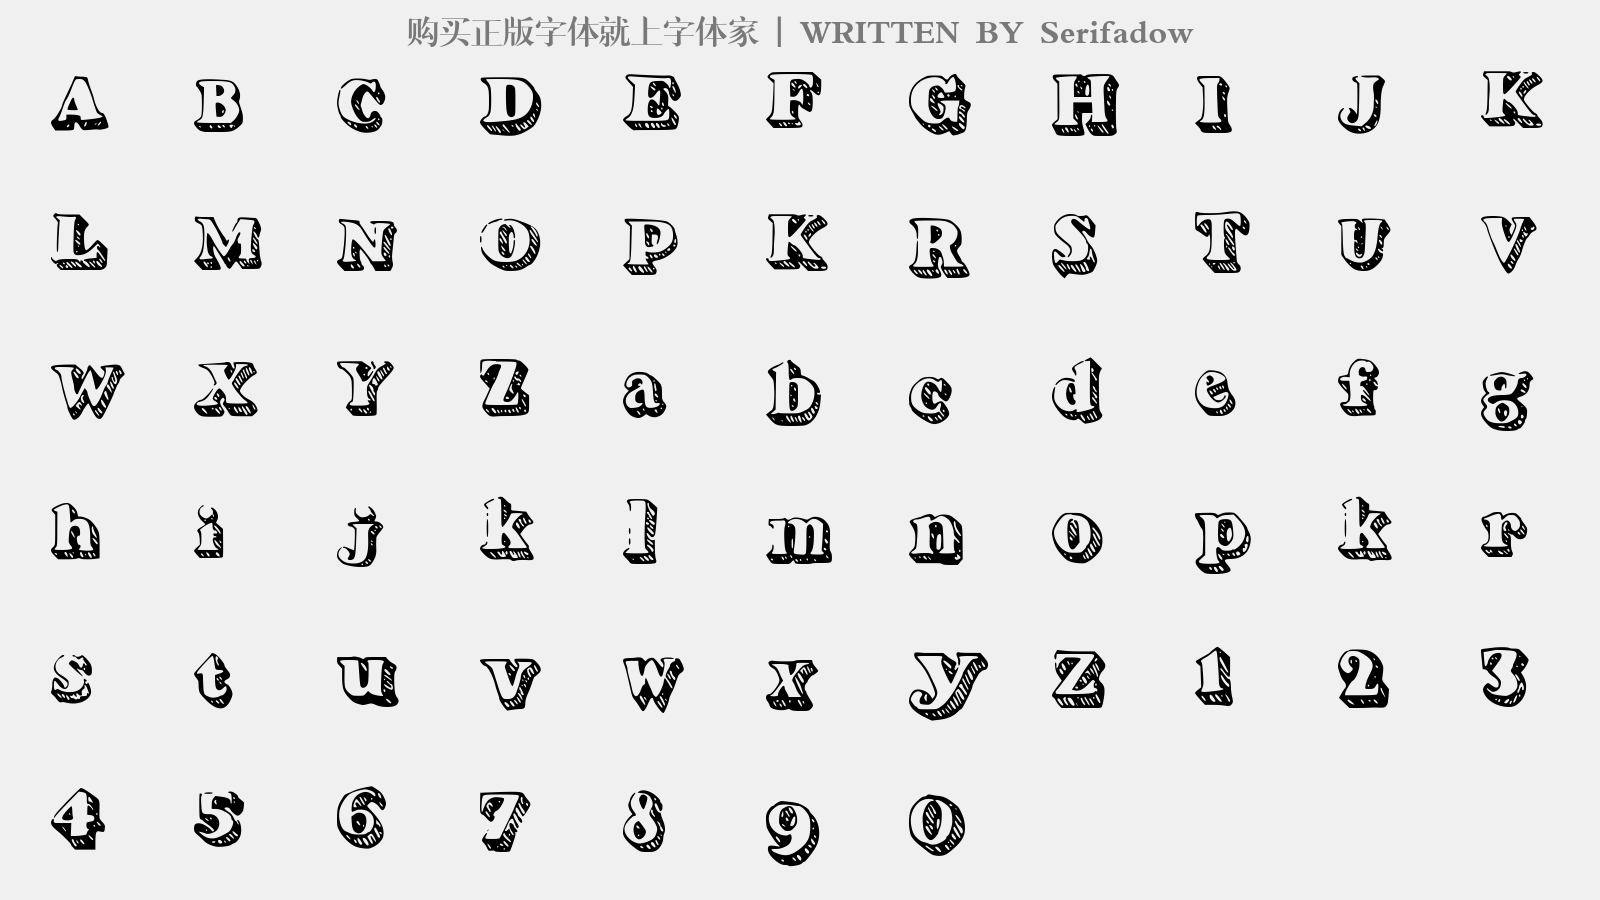 Serifadow - 大写字母/小写字母/数字